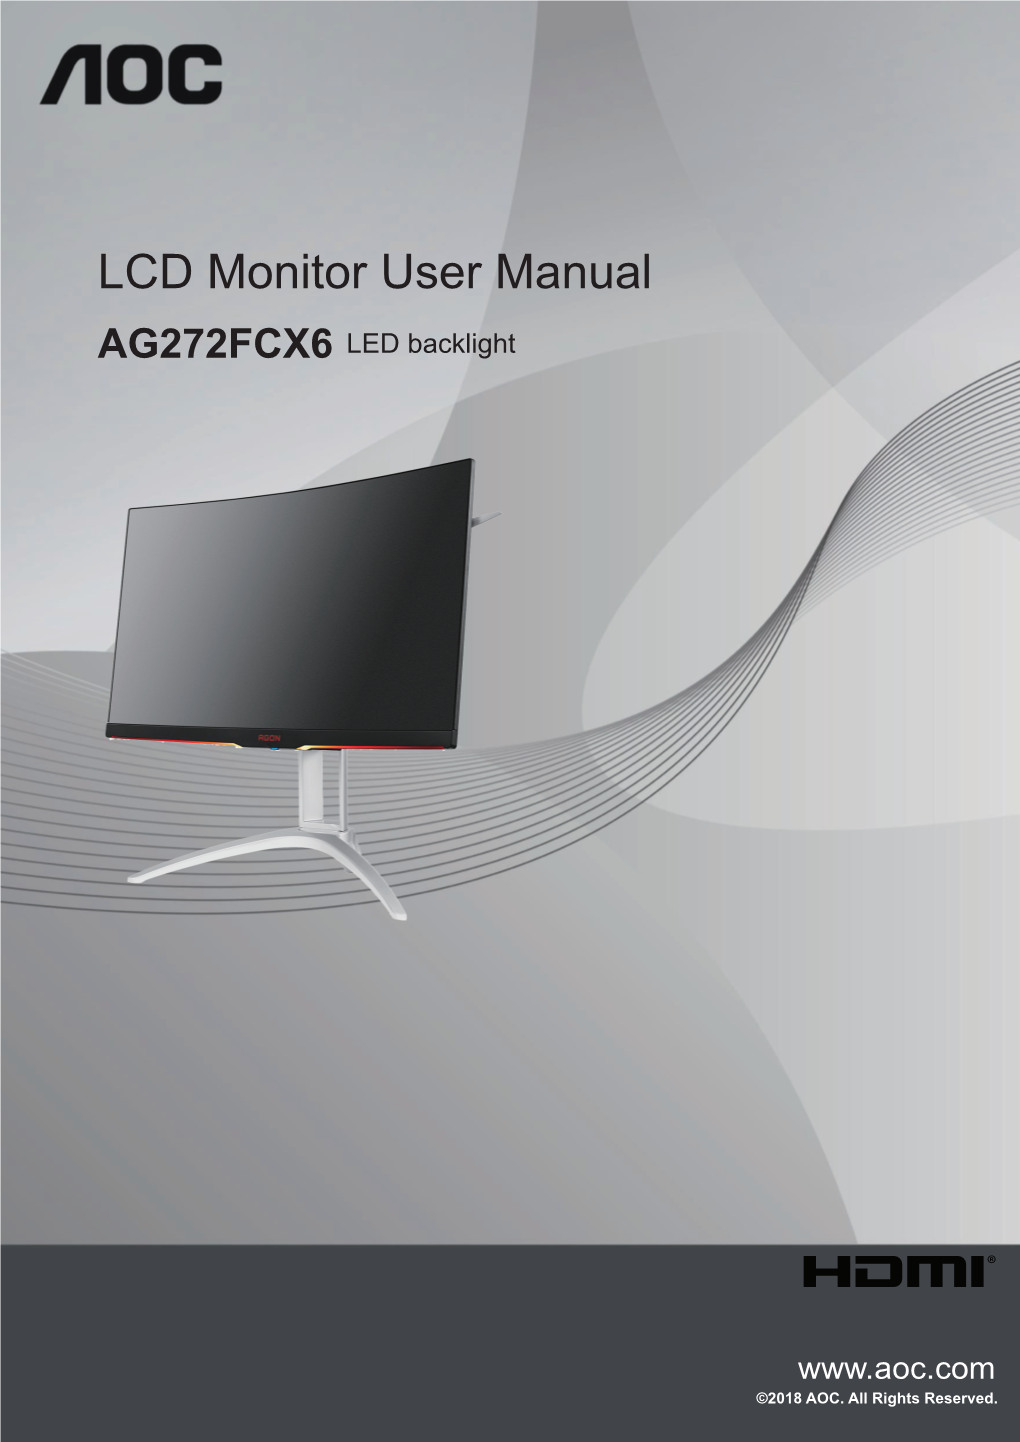 LCD Monitor User Manual AG272FCX6 LED Backlight